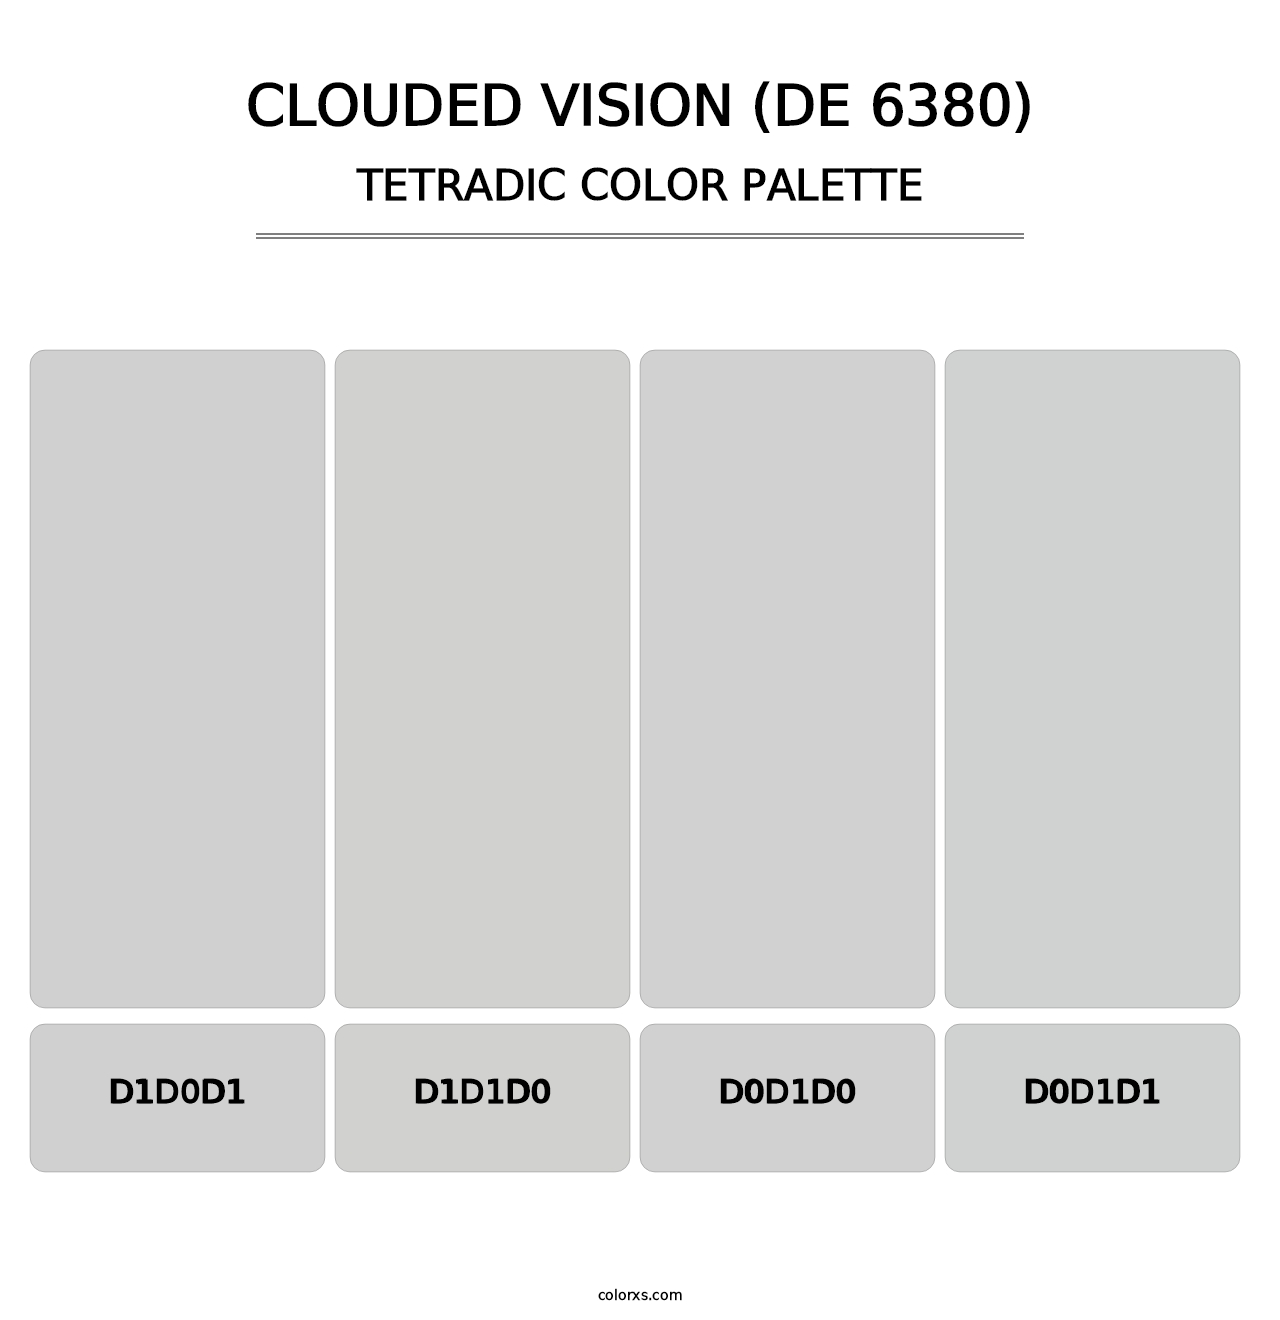 Clouded Vision (DE 6380) - Tetradic Color Palette